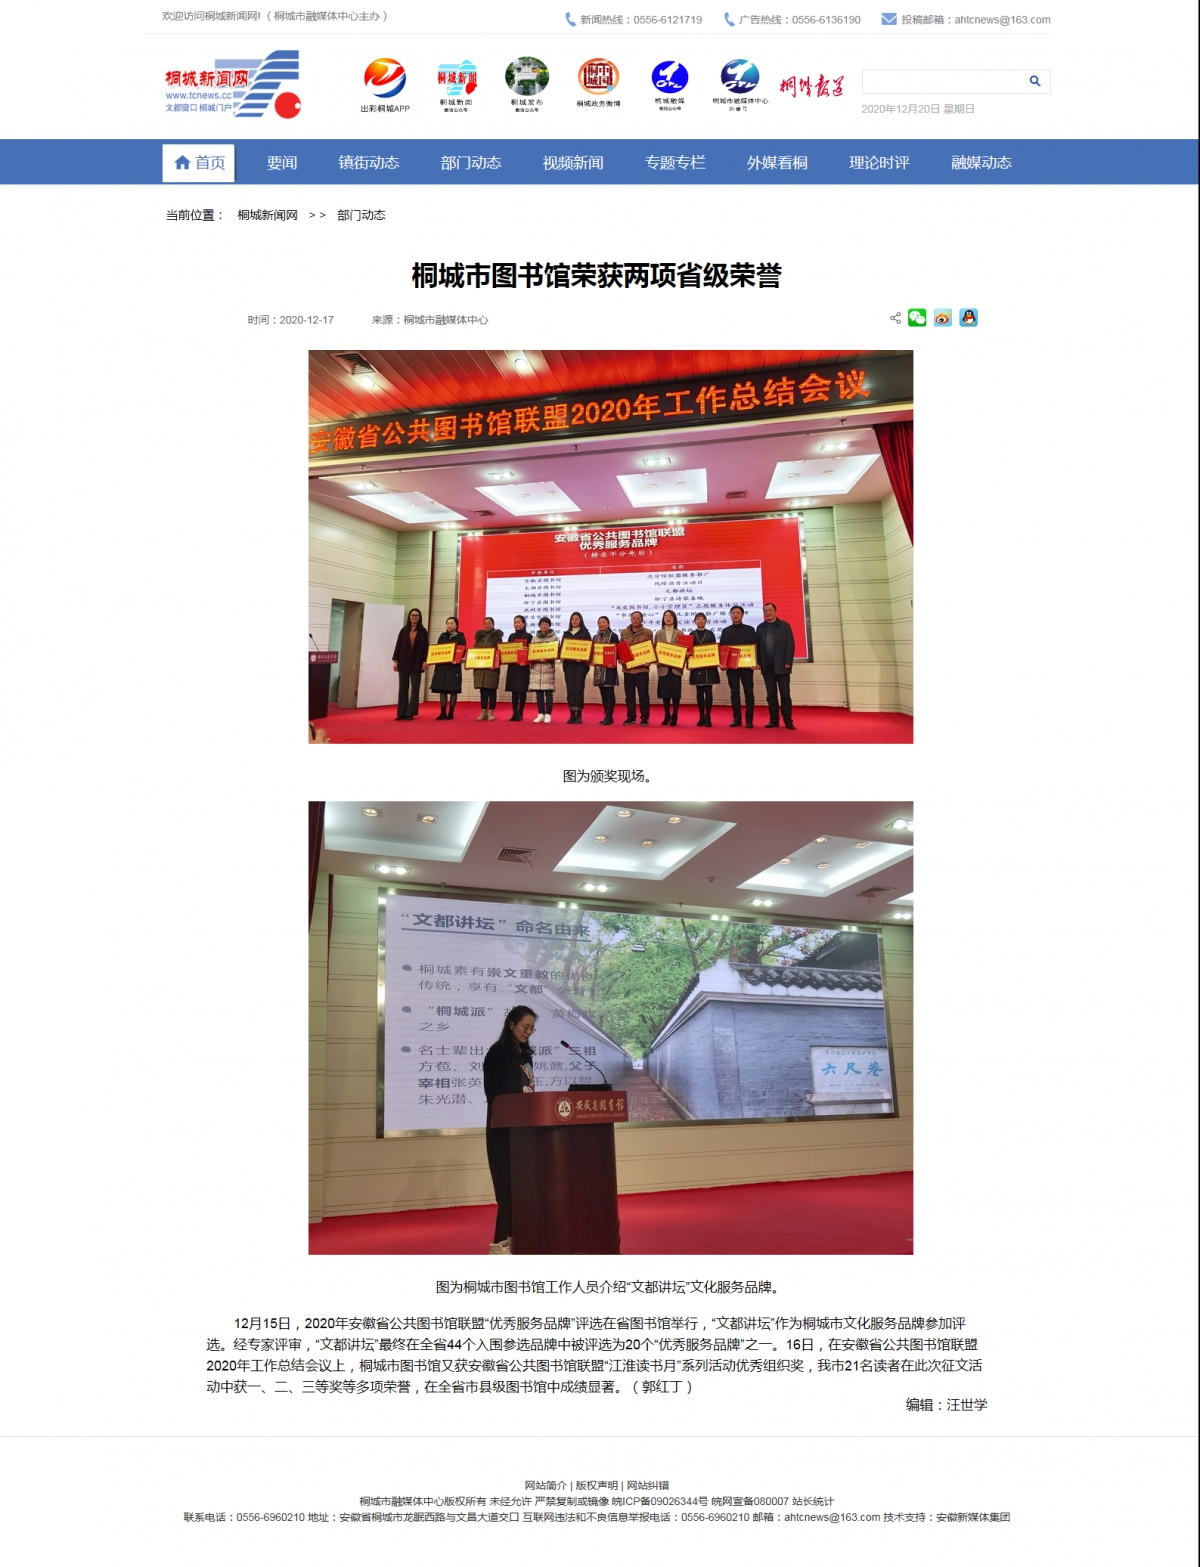 桐城市图书馆荣获两项省级荣誉—桐城新闻网